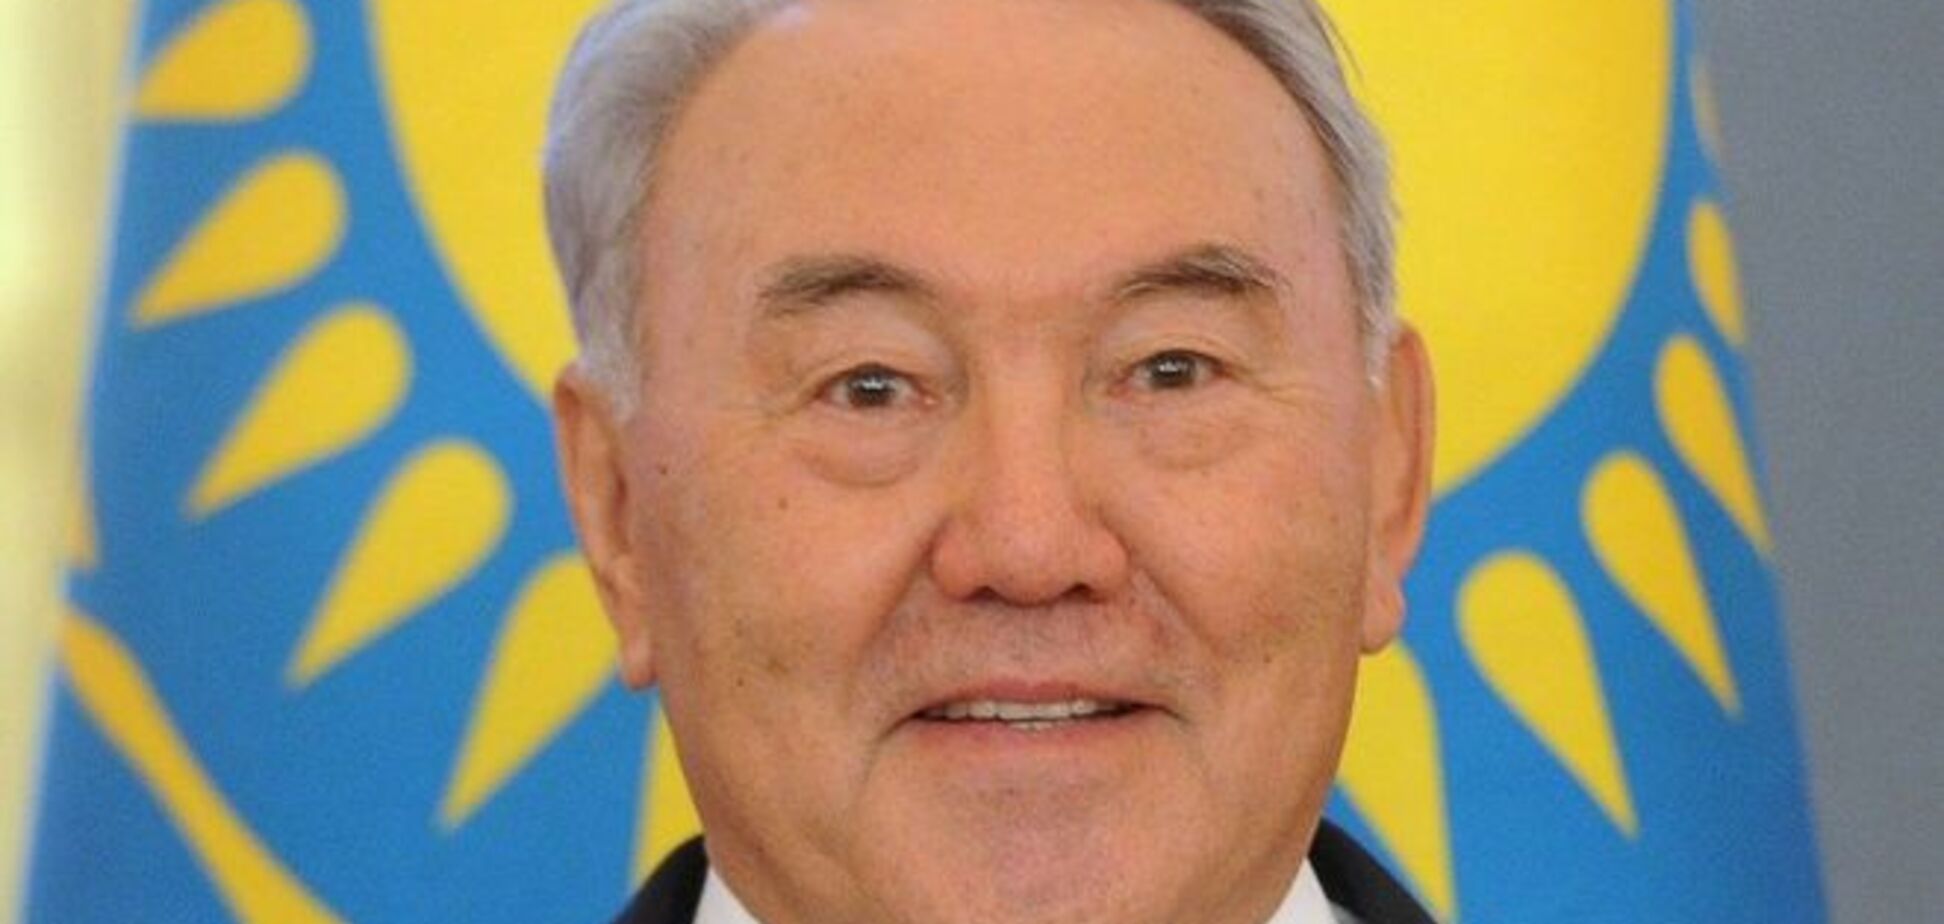 Назарбаев готов помочь Украине решить проблему Донбасса 'как честный менеджер'